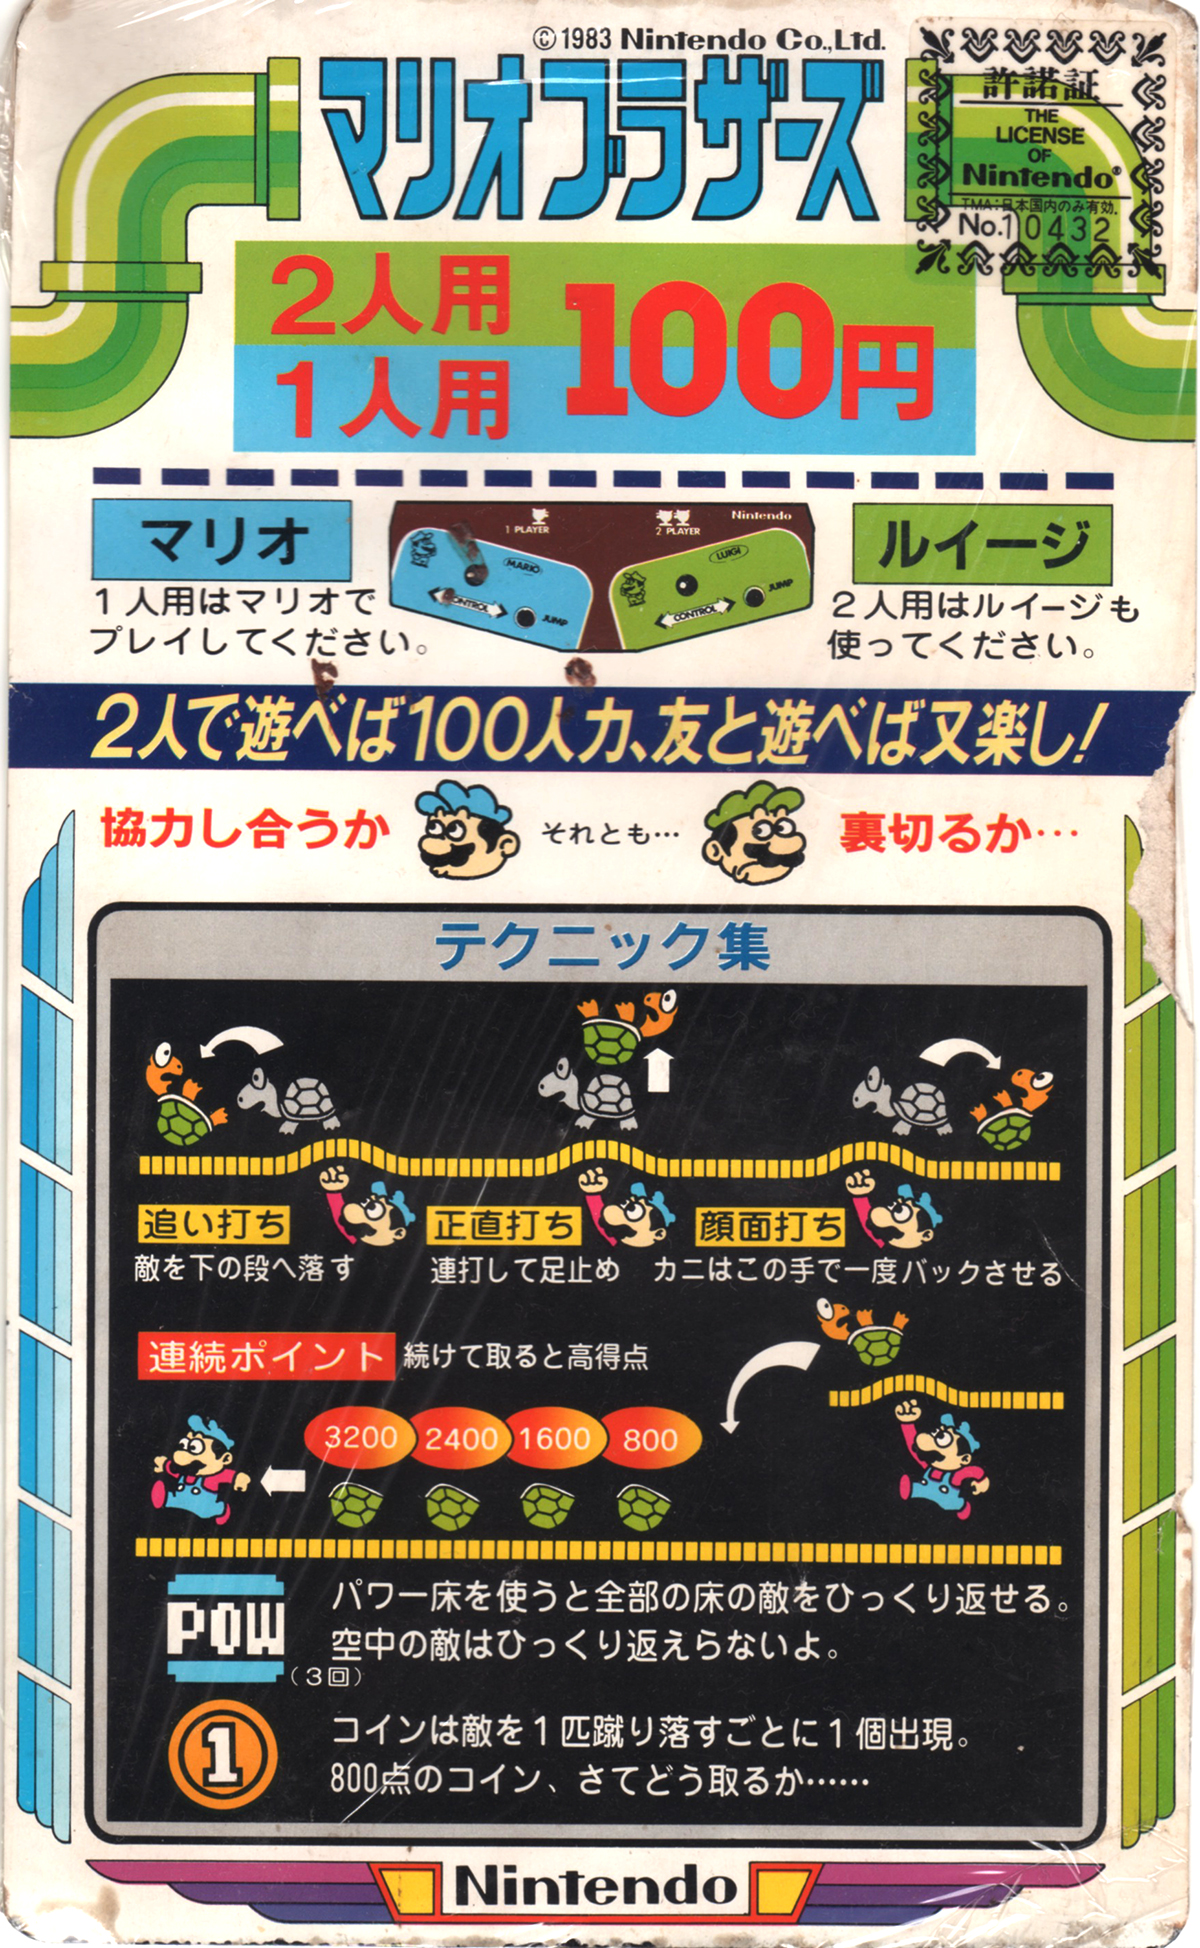 任天堂「マリオブラザーズ」インストカード/Nintendo "Mario Bros." Instruction Card